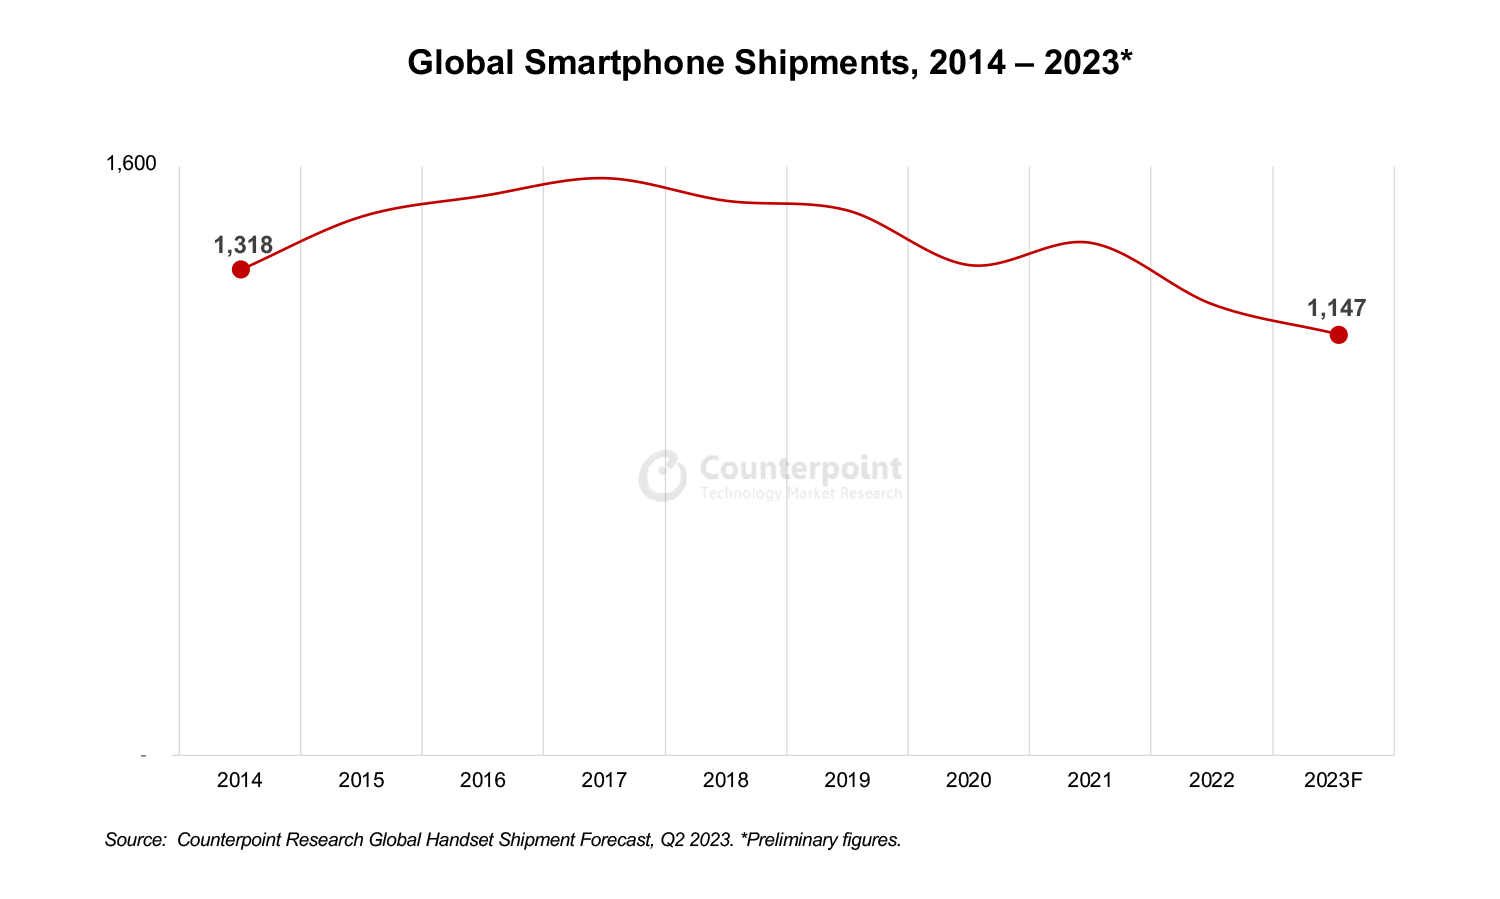 Ринок смартфонів відкотиться на 10 років назад, а Apple вперше стане лідером замість Samsung — прогноз Counterpoint на 2023 рік